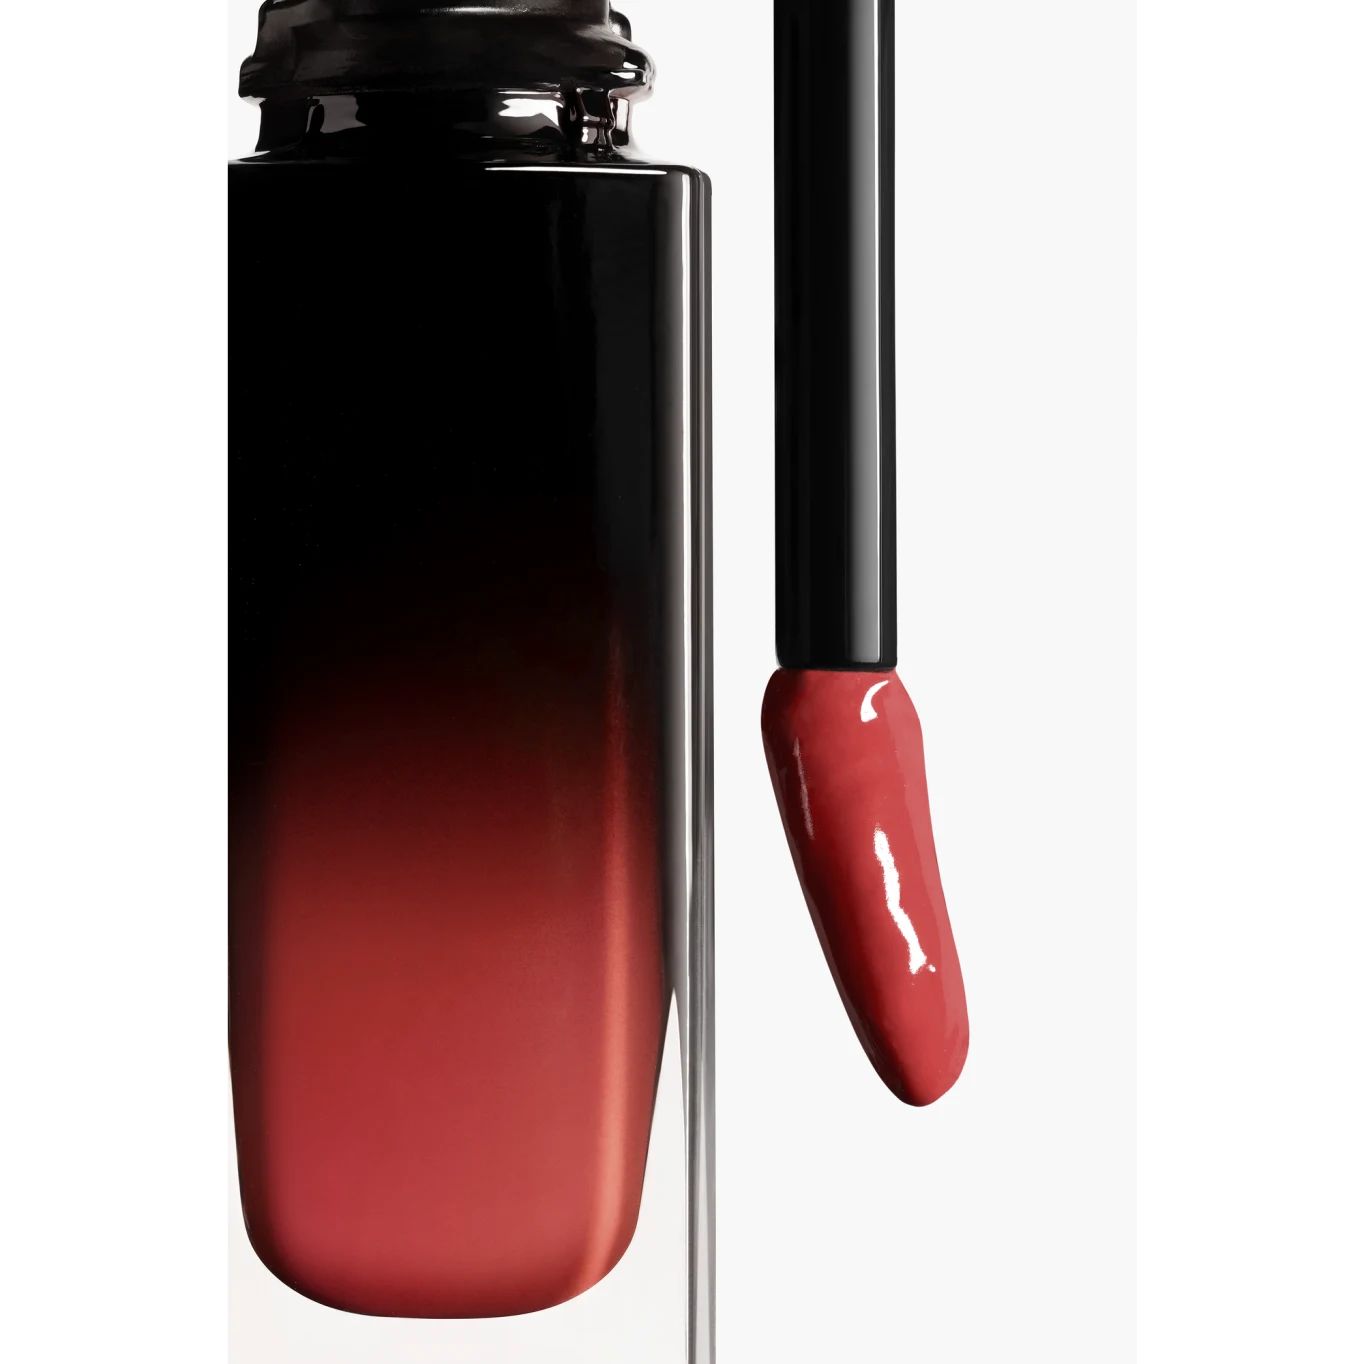 ROUGE ALLURE LAQUE Ultrawear shine liquid lip colour 93 - Sea star | CHANEL | Chanel, Inc. (US)